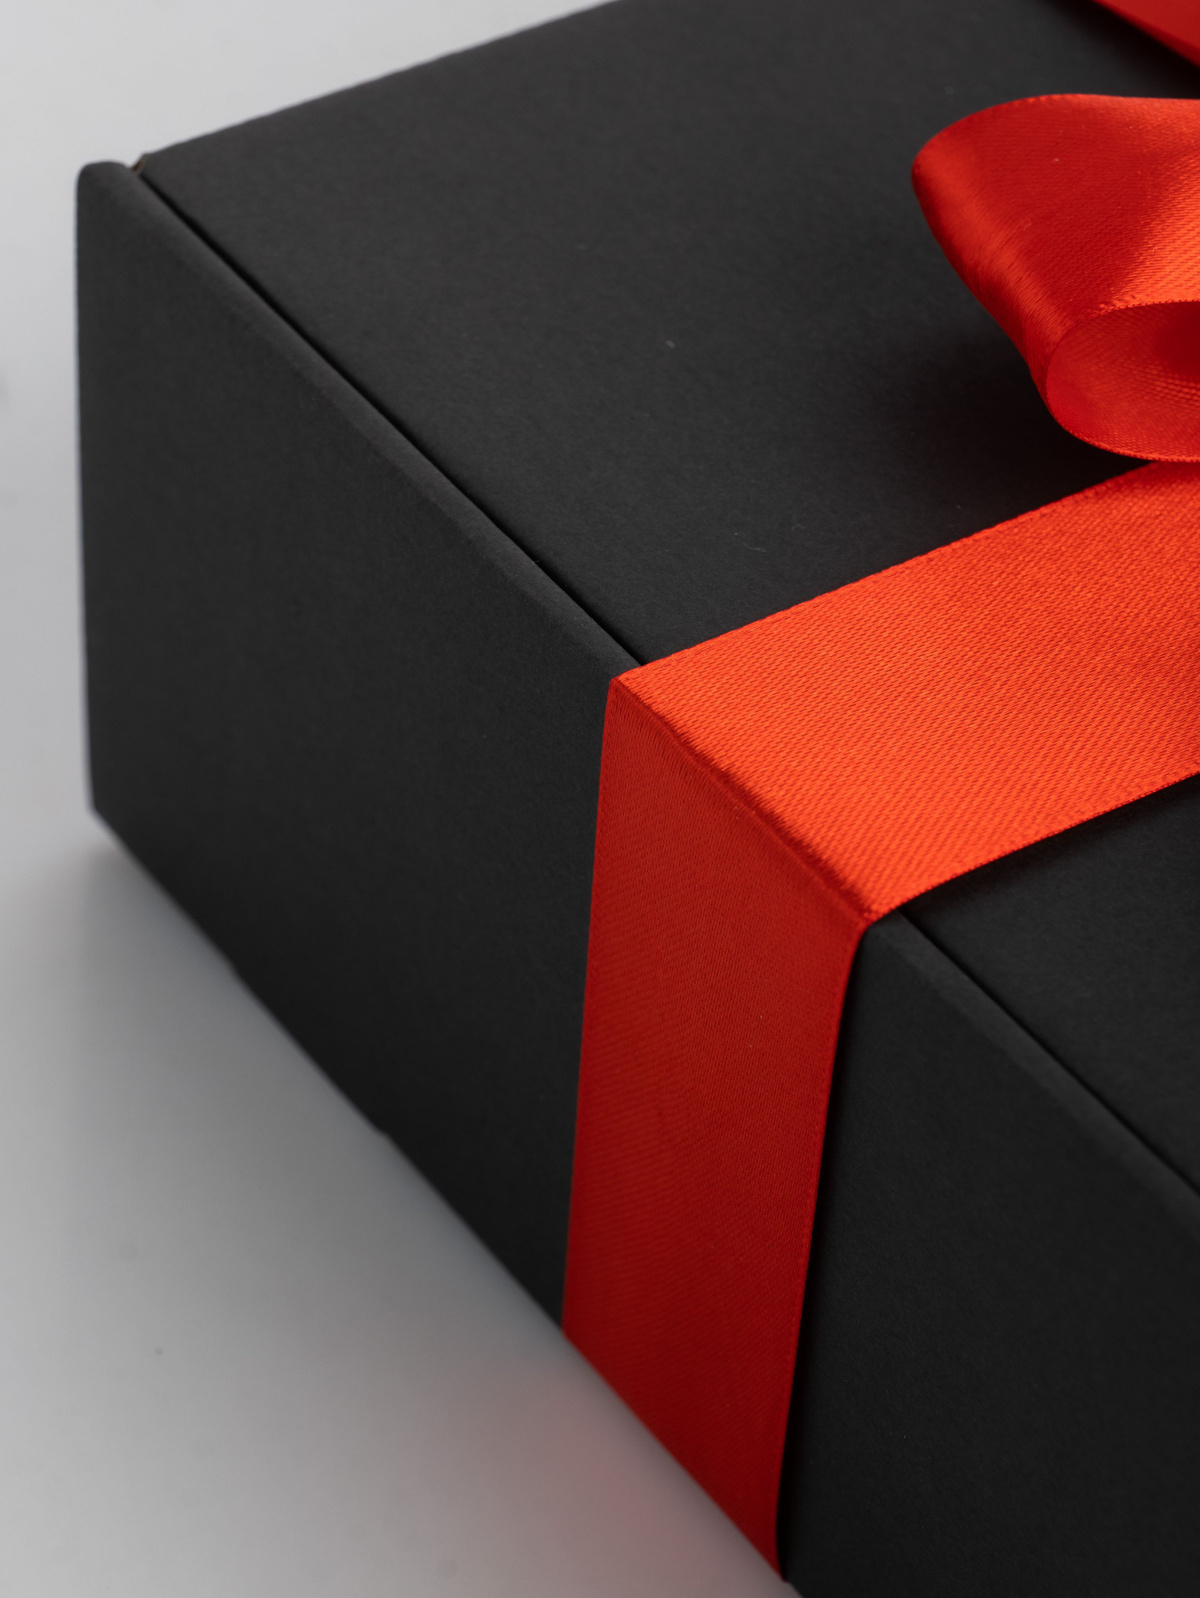 Такой подарок не только порадует получателя, но и станет прекрасным украшением для любого праздника или события. Он идеально подойдет для Нового года, дня рождения, свадьбы, юбилея или любого другого торжества. В комплект входит одна коробка, которая имеет размеры 25x21x9 см. Вы можете выбрать подходящую наклейку для каждой категории людей и сделать подарок еще более индивидуальным.